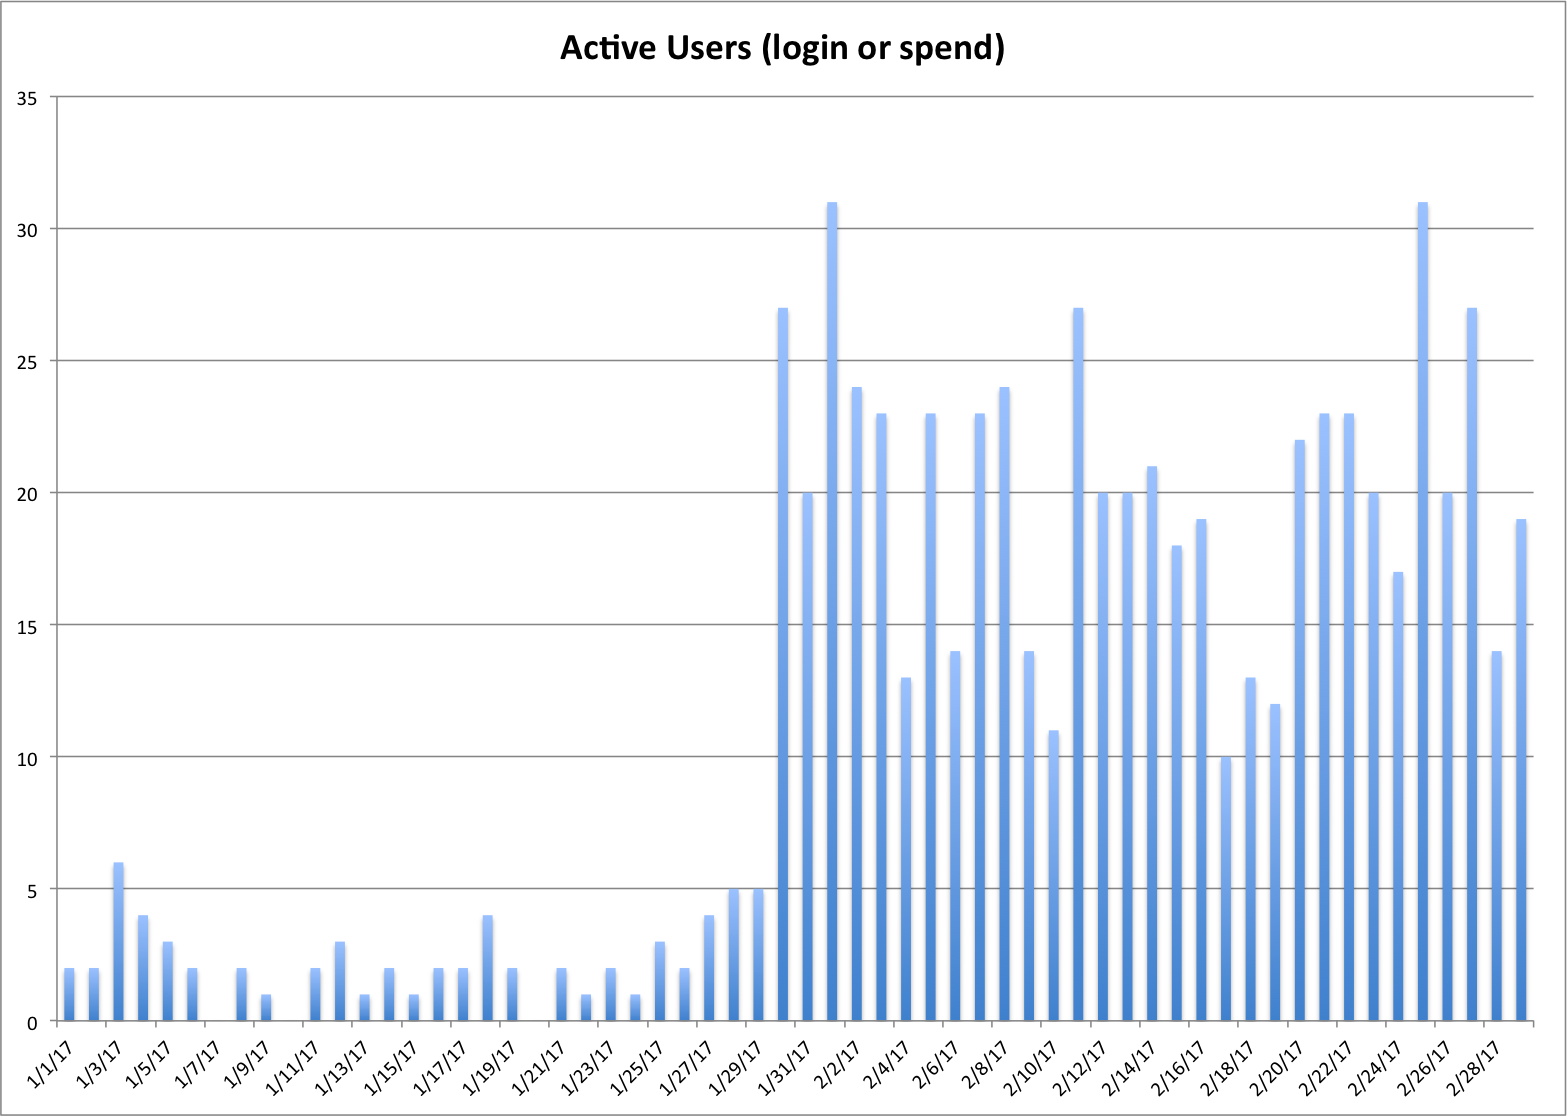 Chart of Active Gloebit Users